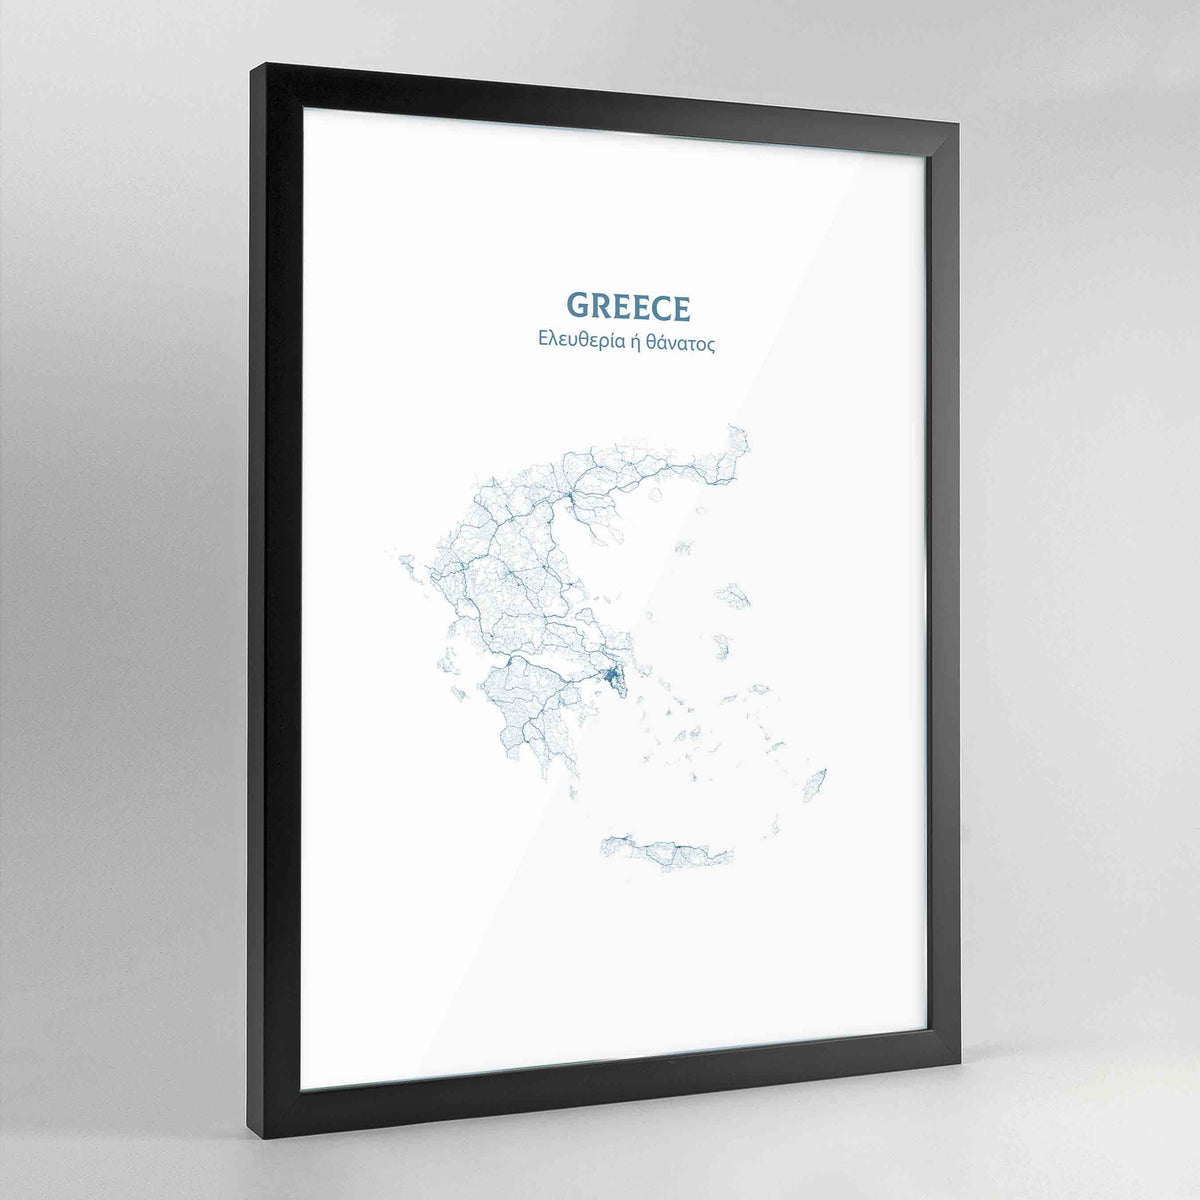 Greece - All Roads Art Print - Framed